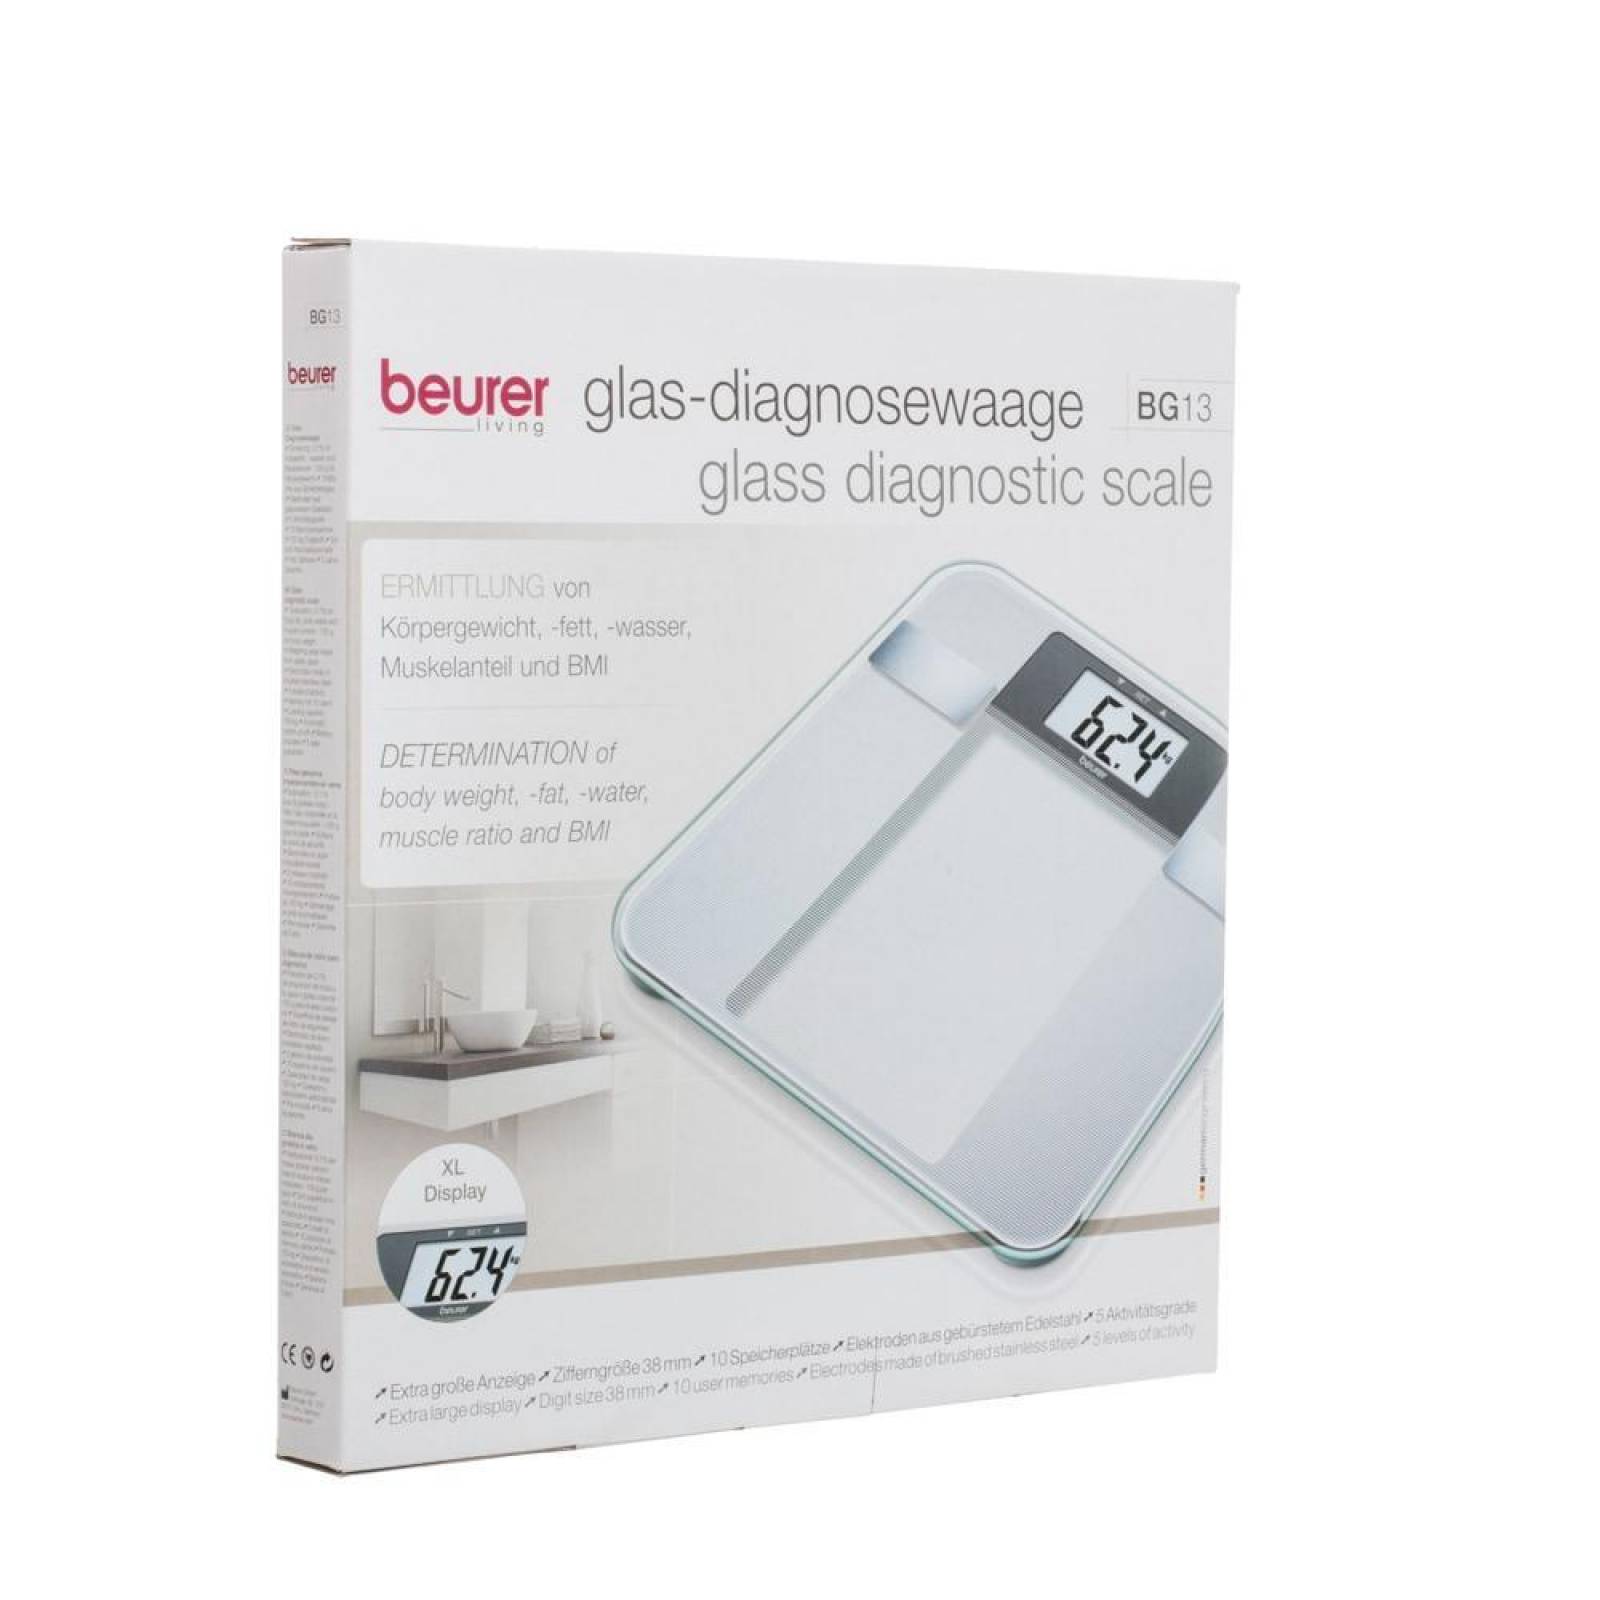 Beurer BG-13 Báscula Baño digital Diagnóstica display xl